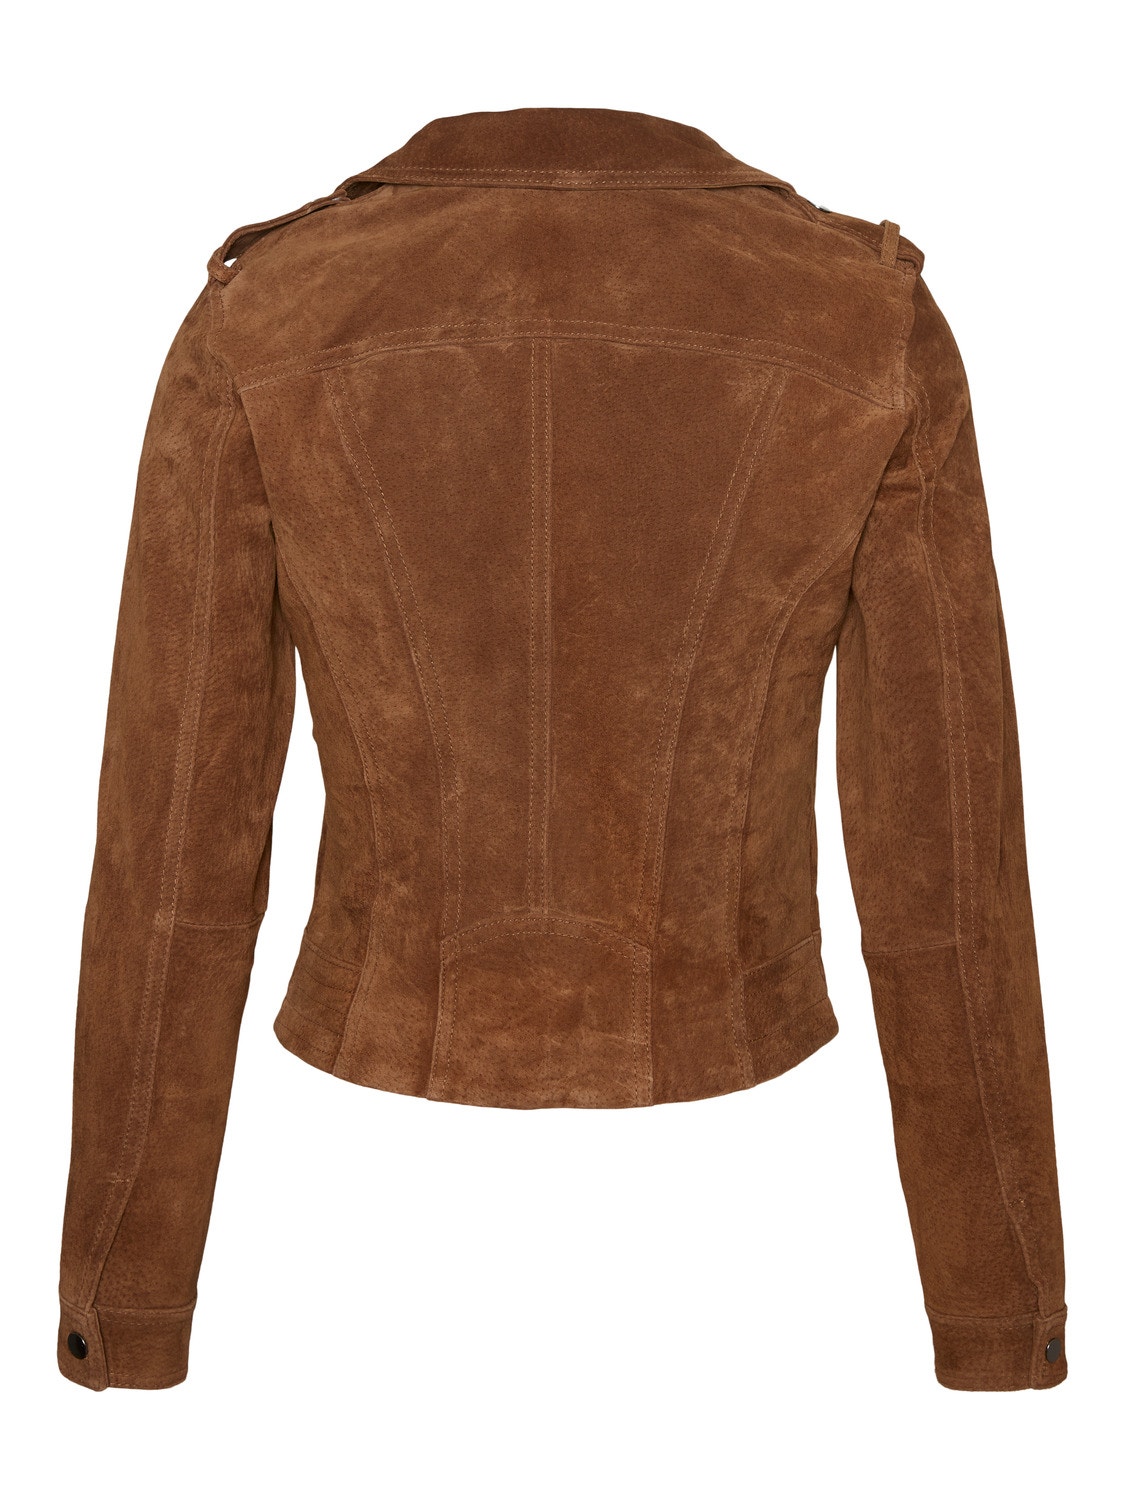 Vero Moda VMROYCE Jacket -Cognac - 10236491